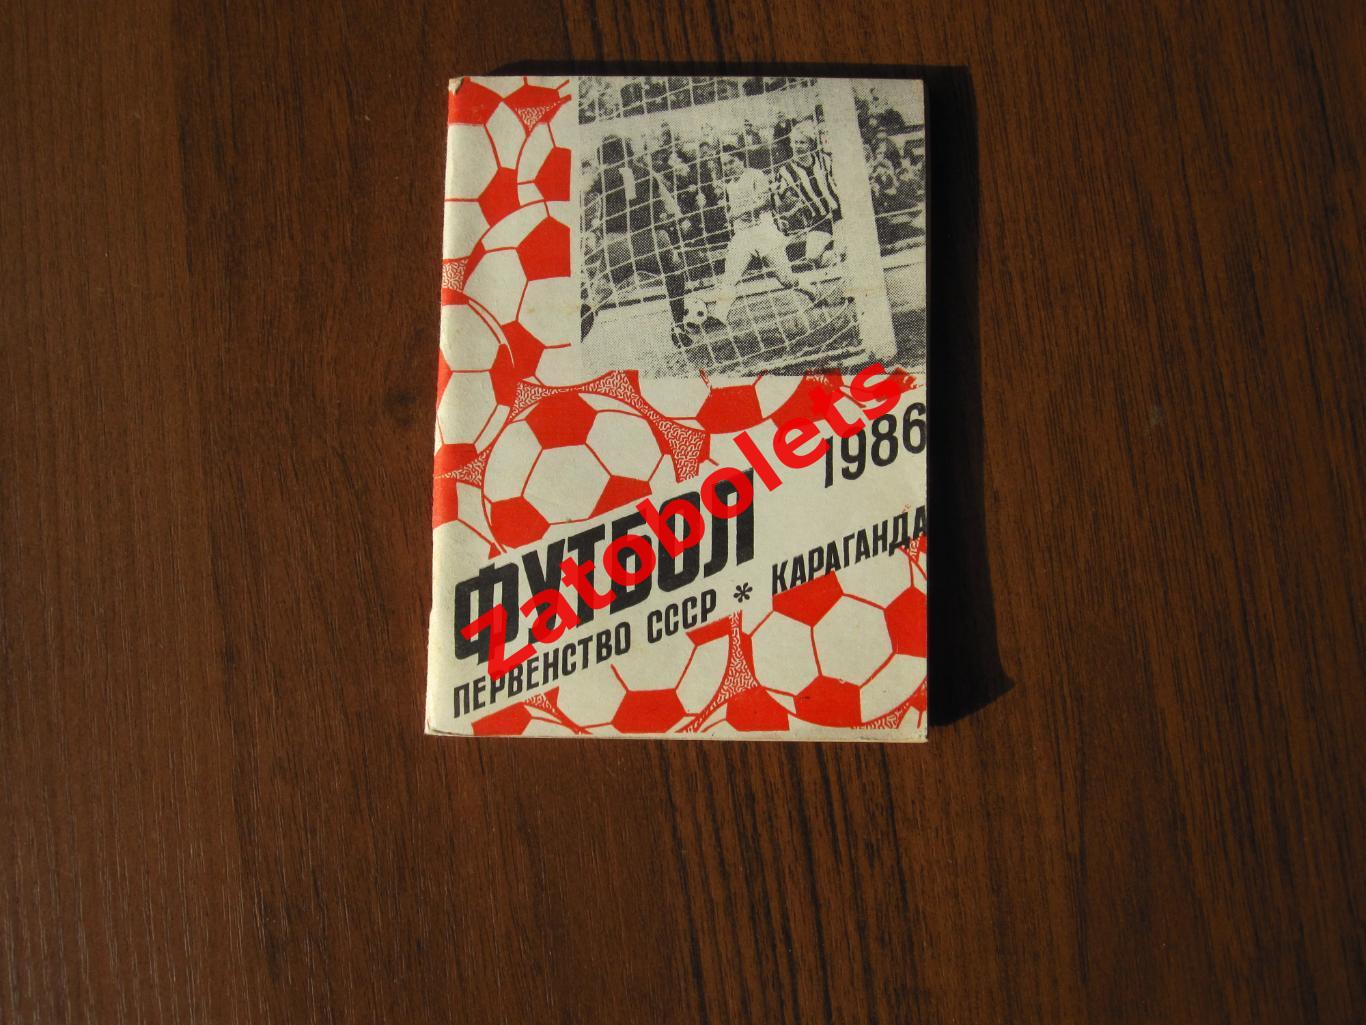 Футбол Календарь-справочник Караганда 1986